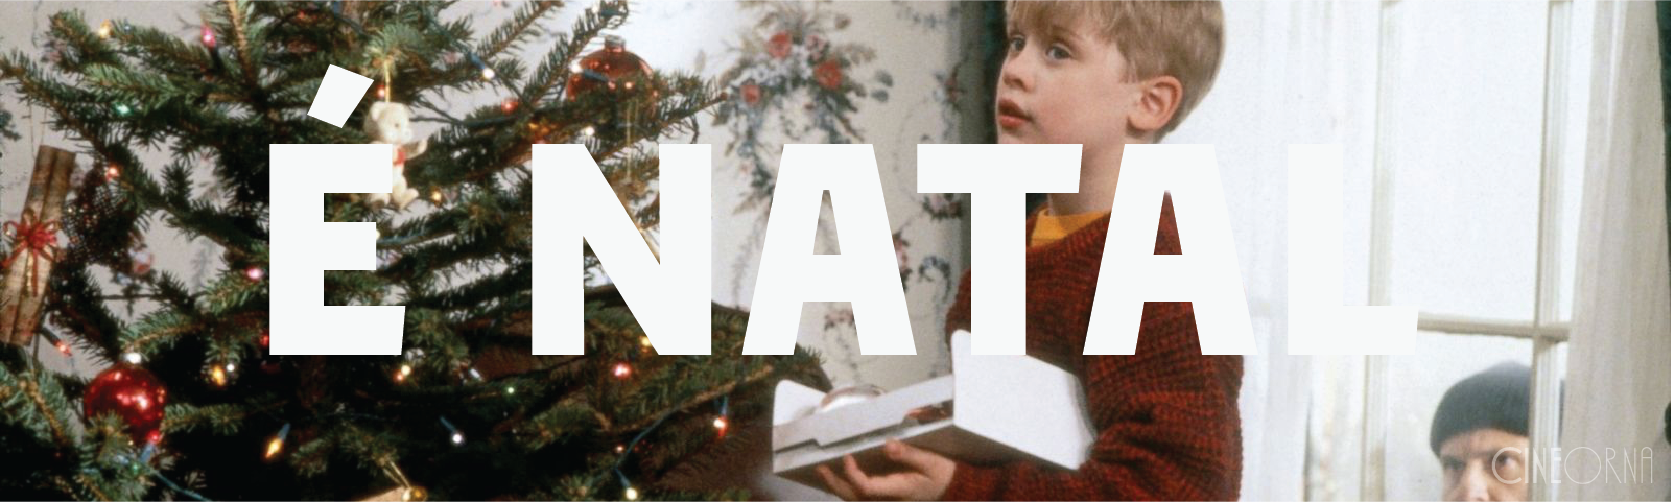 Os 10 melhores filmes de Natal para assistir com a família